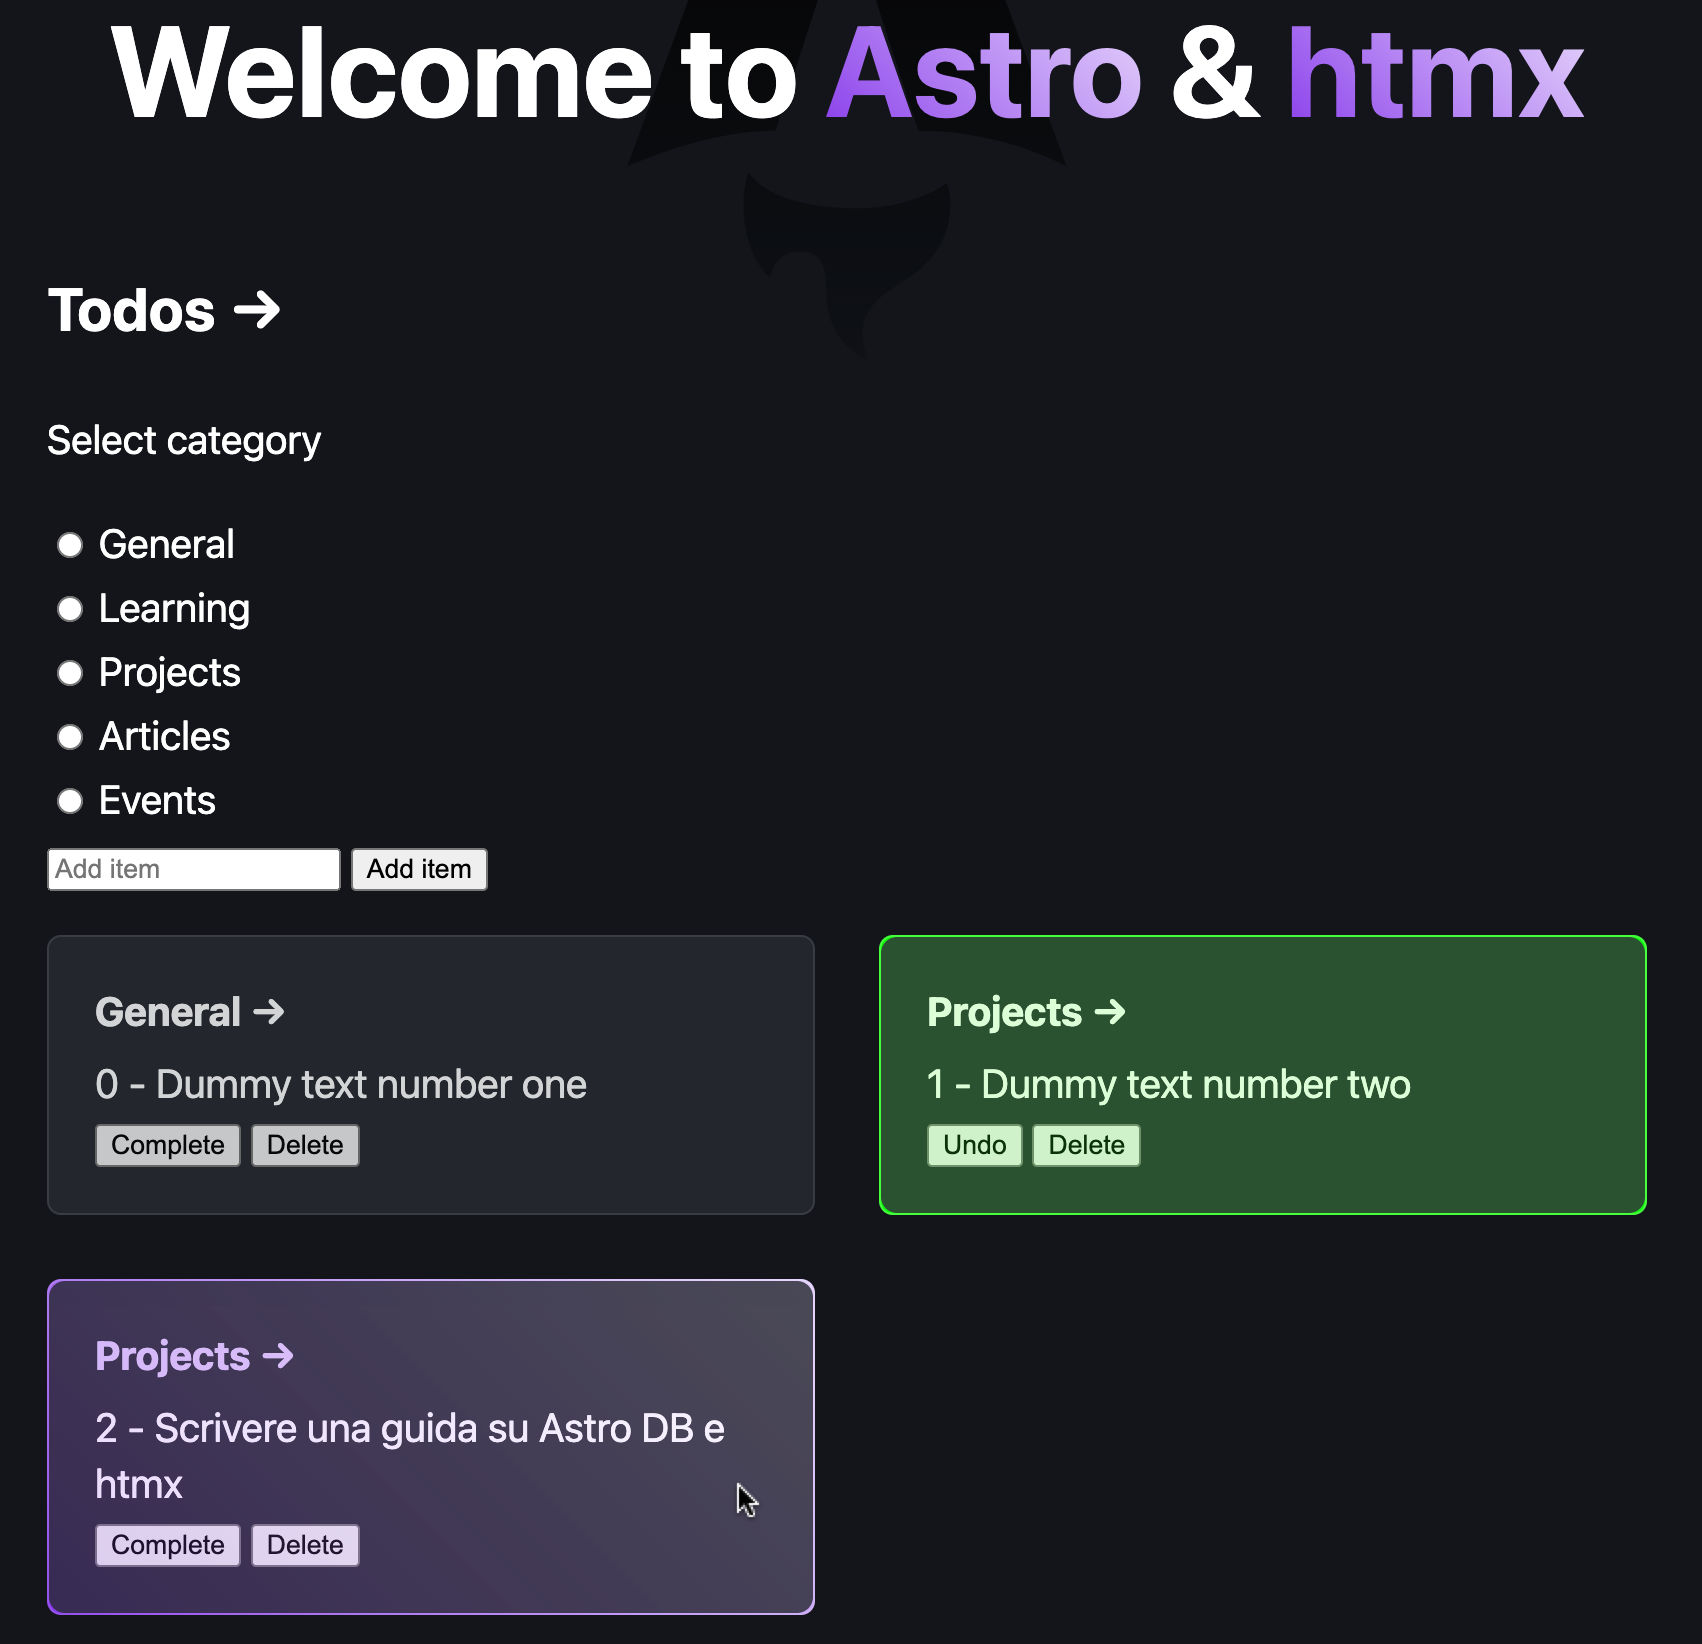 Un'applicazione per la gestione di una todo list sviluppata con Astro e htmx